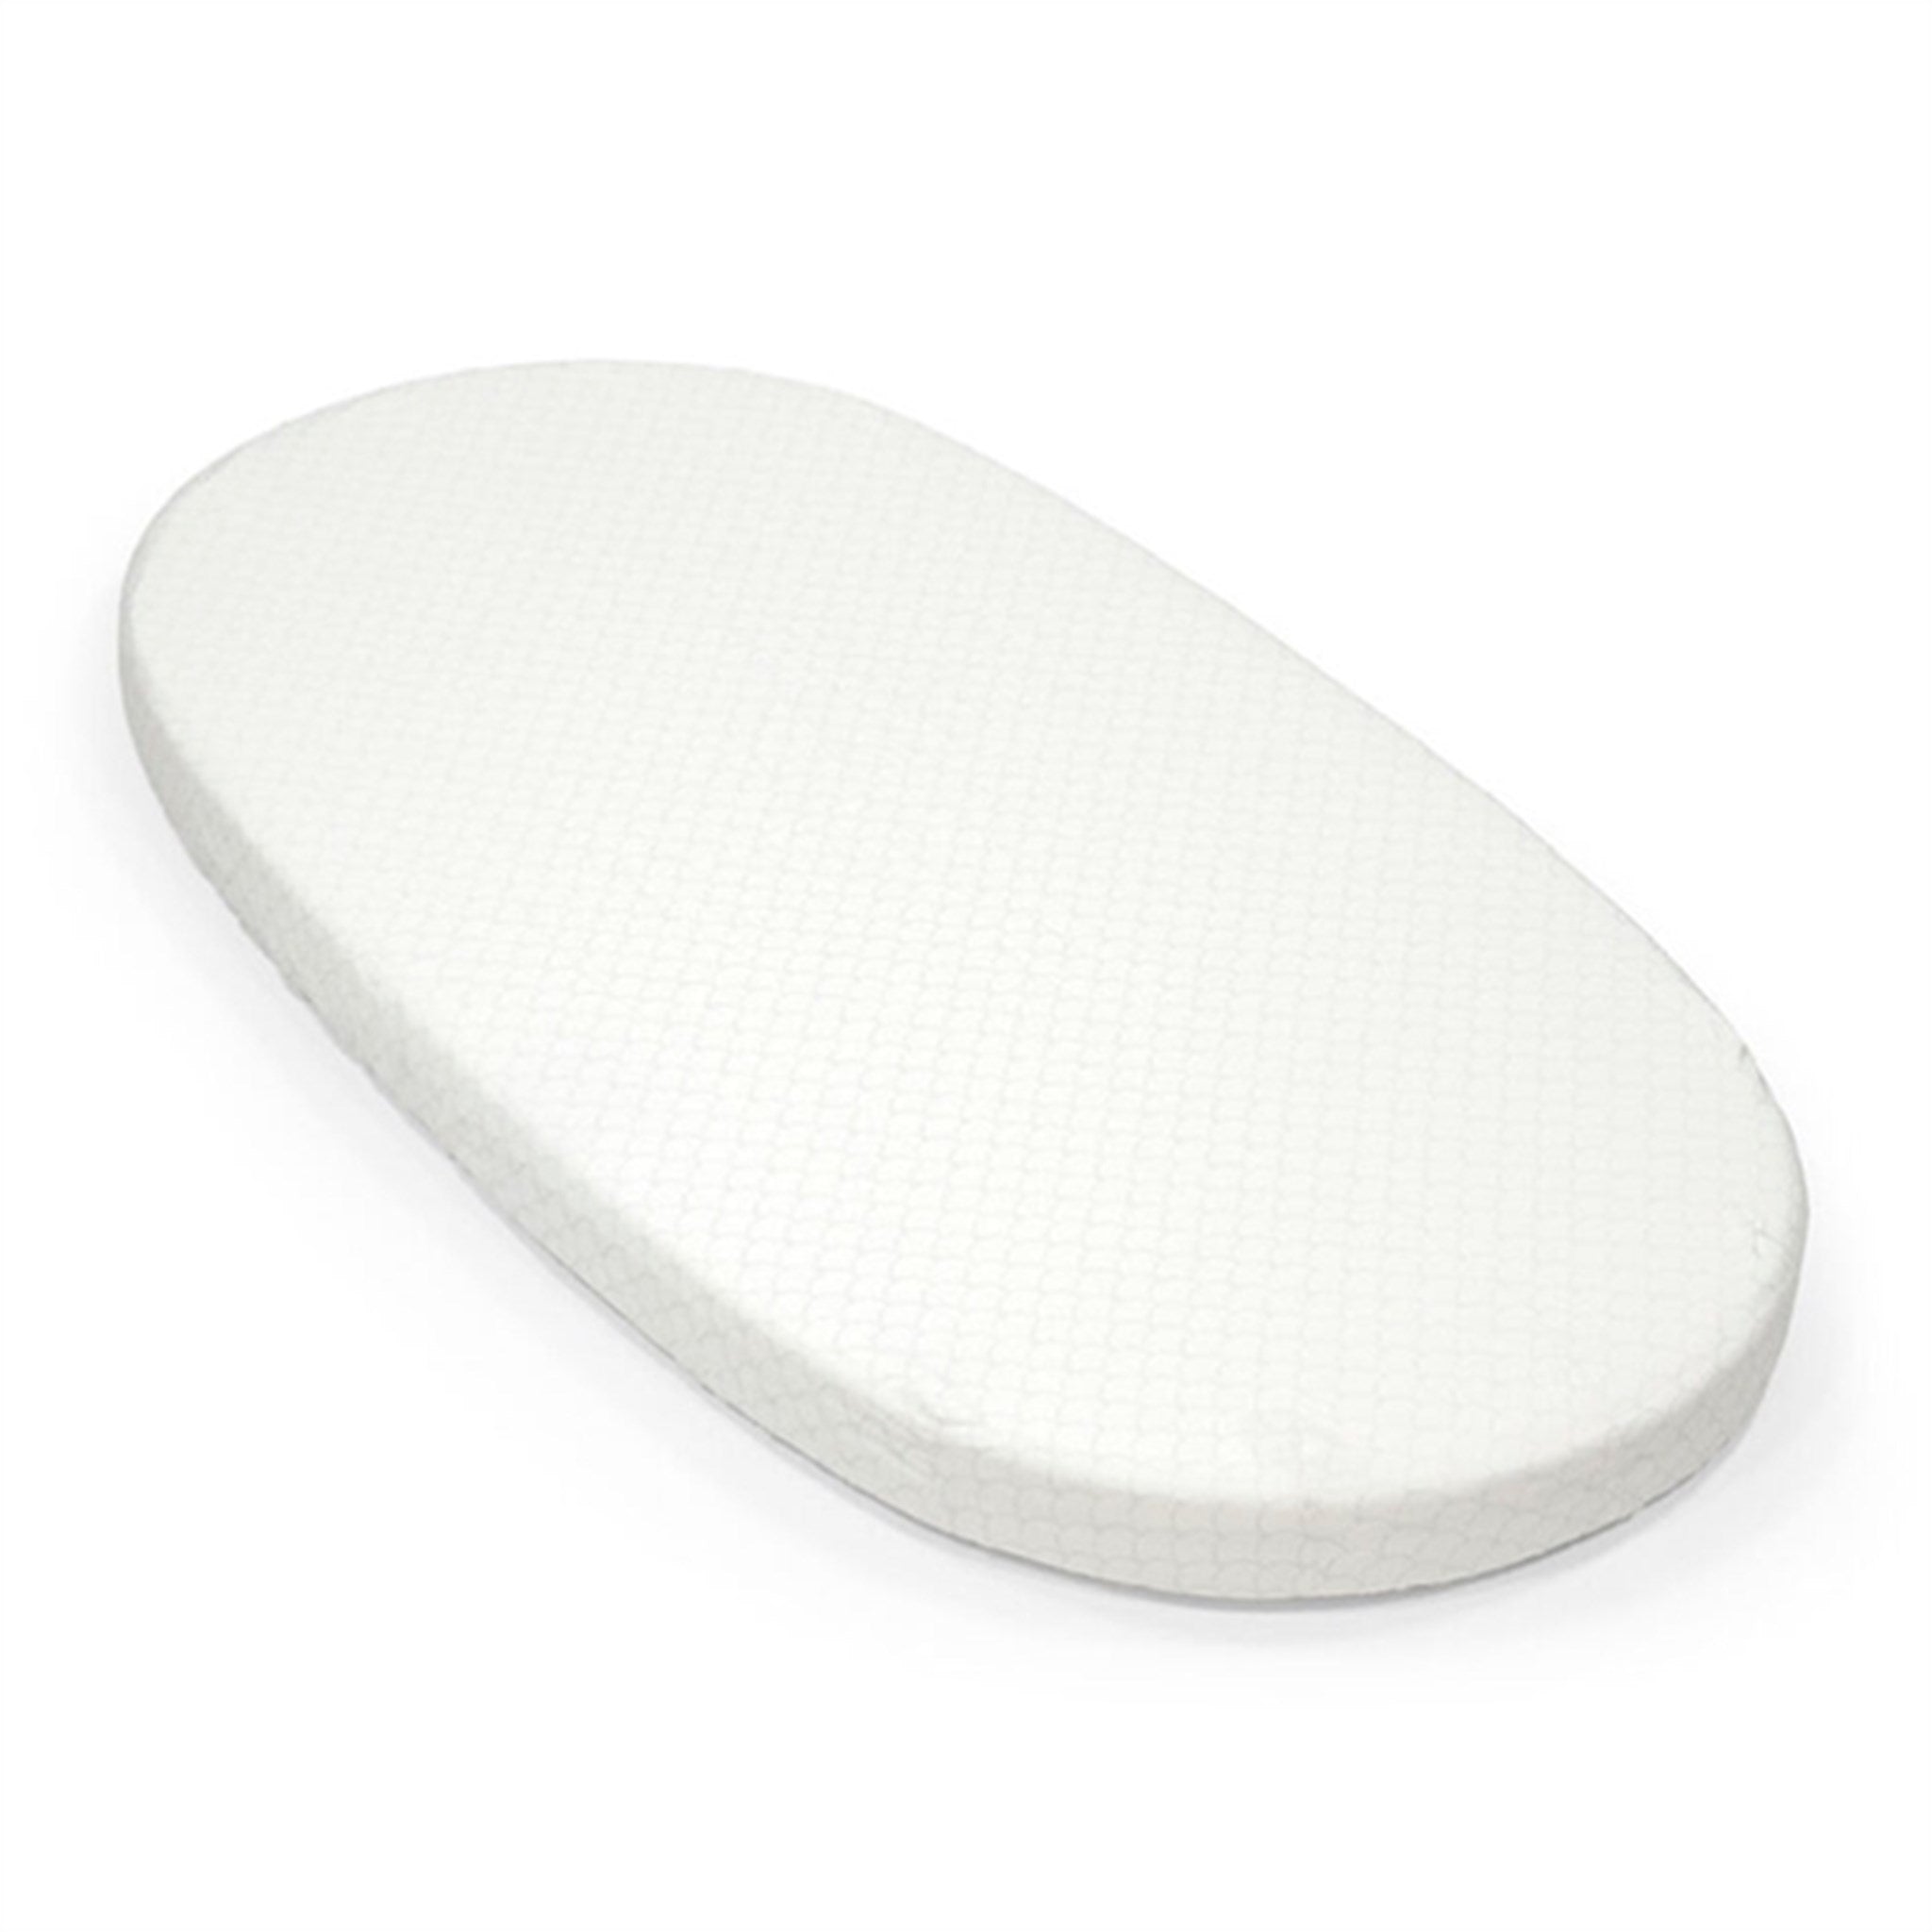 Stokke® Sleepi™ Bed Fitted Sheet Fans Grey V3